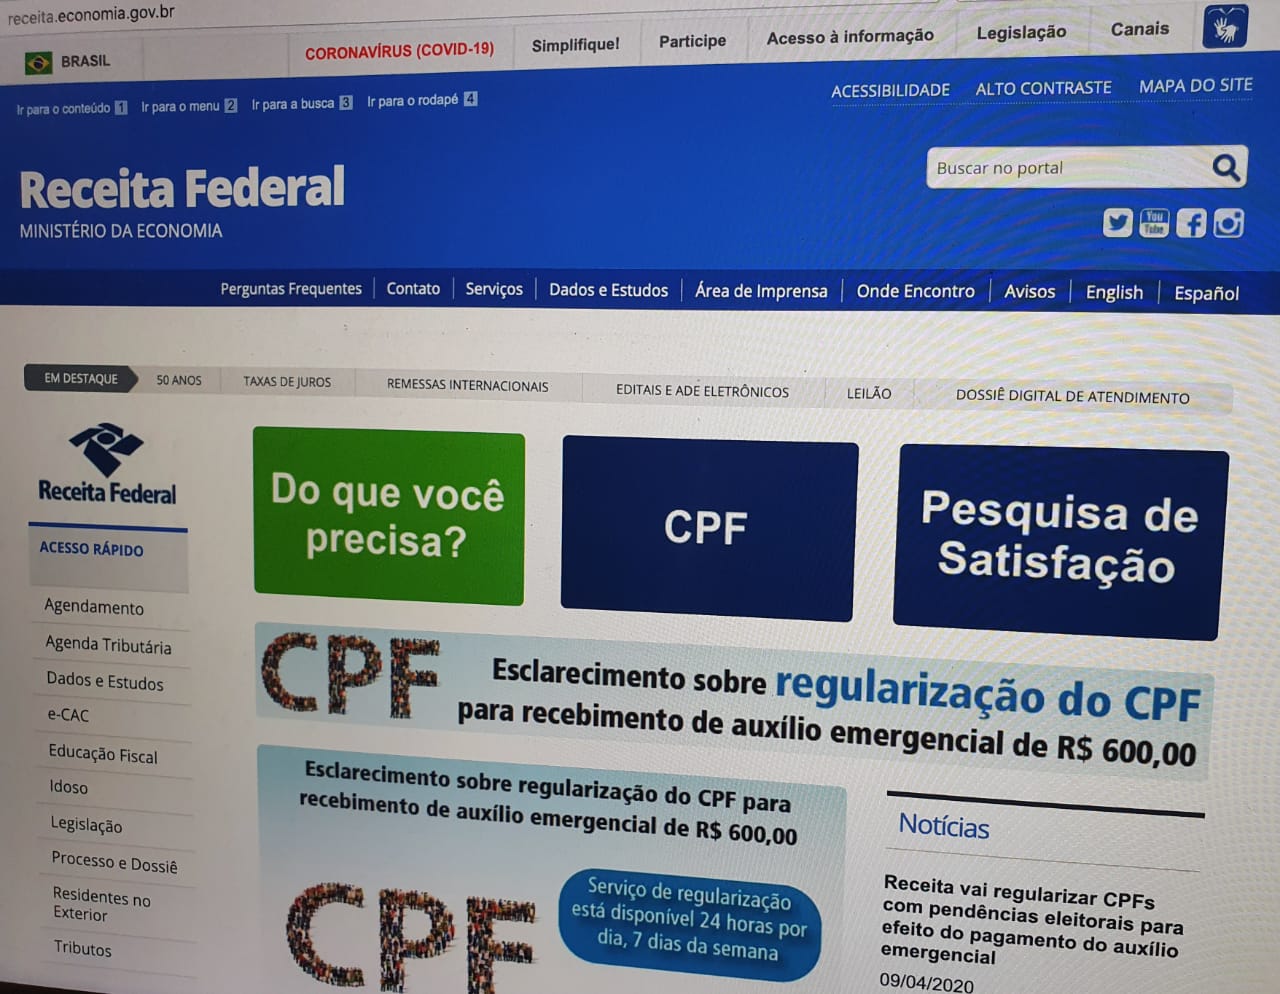 Photo of CPF – Documento pode ser obtido nos Correios e regularização também pode ser feita no site da Receita Federal